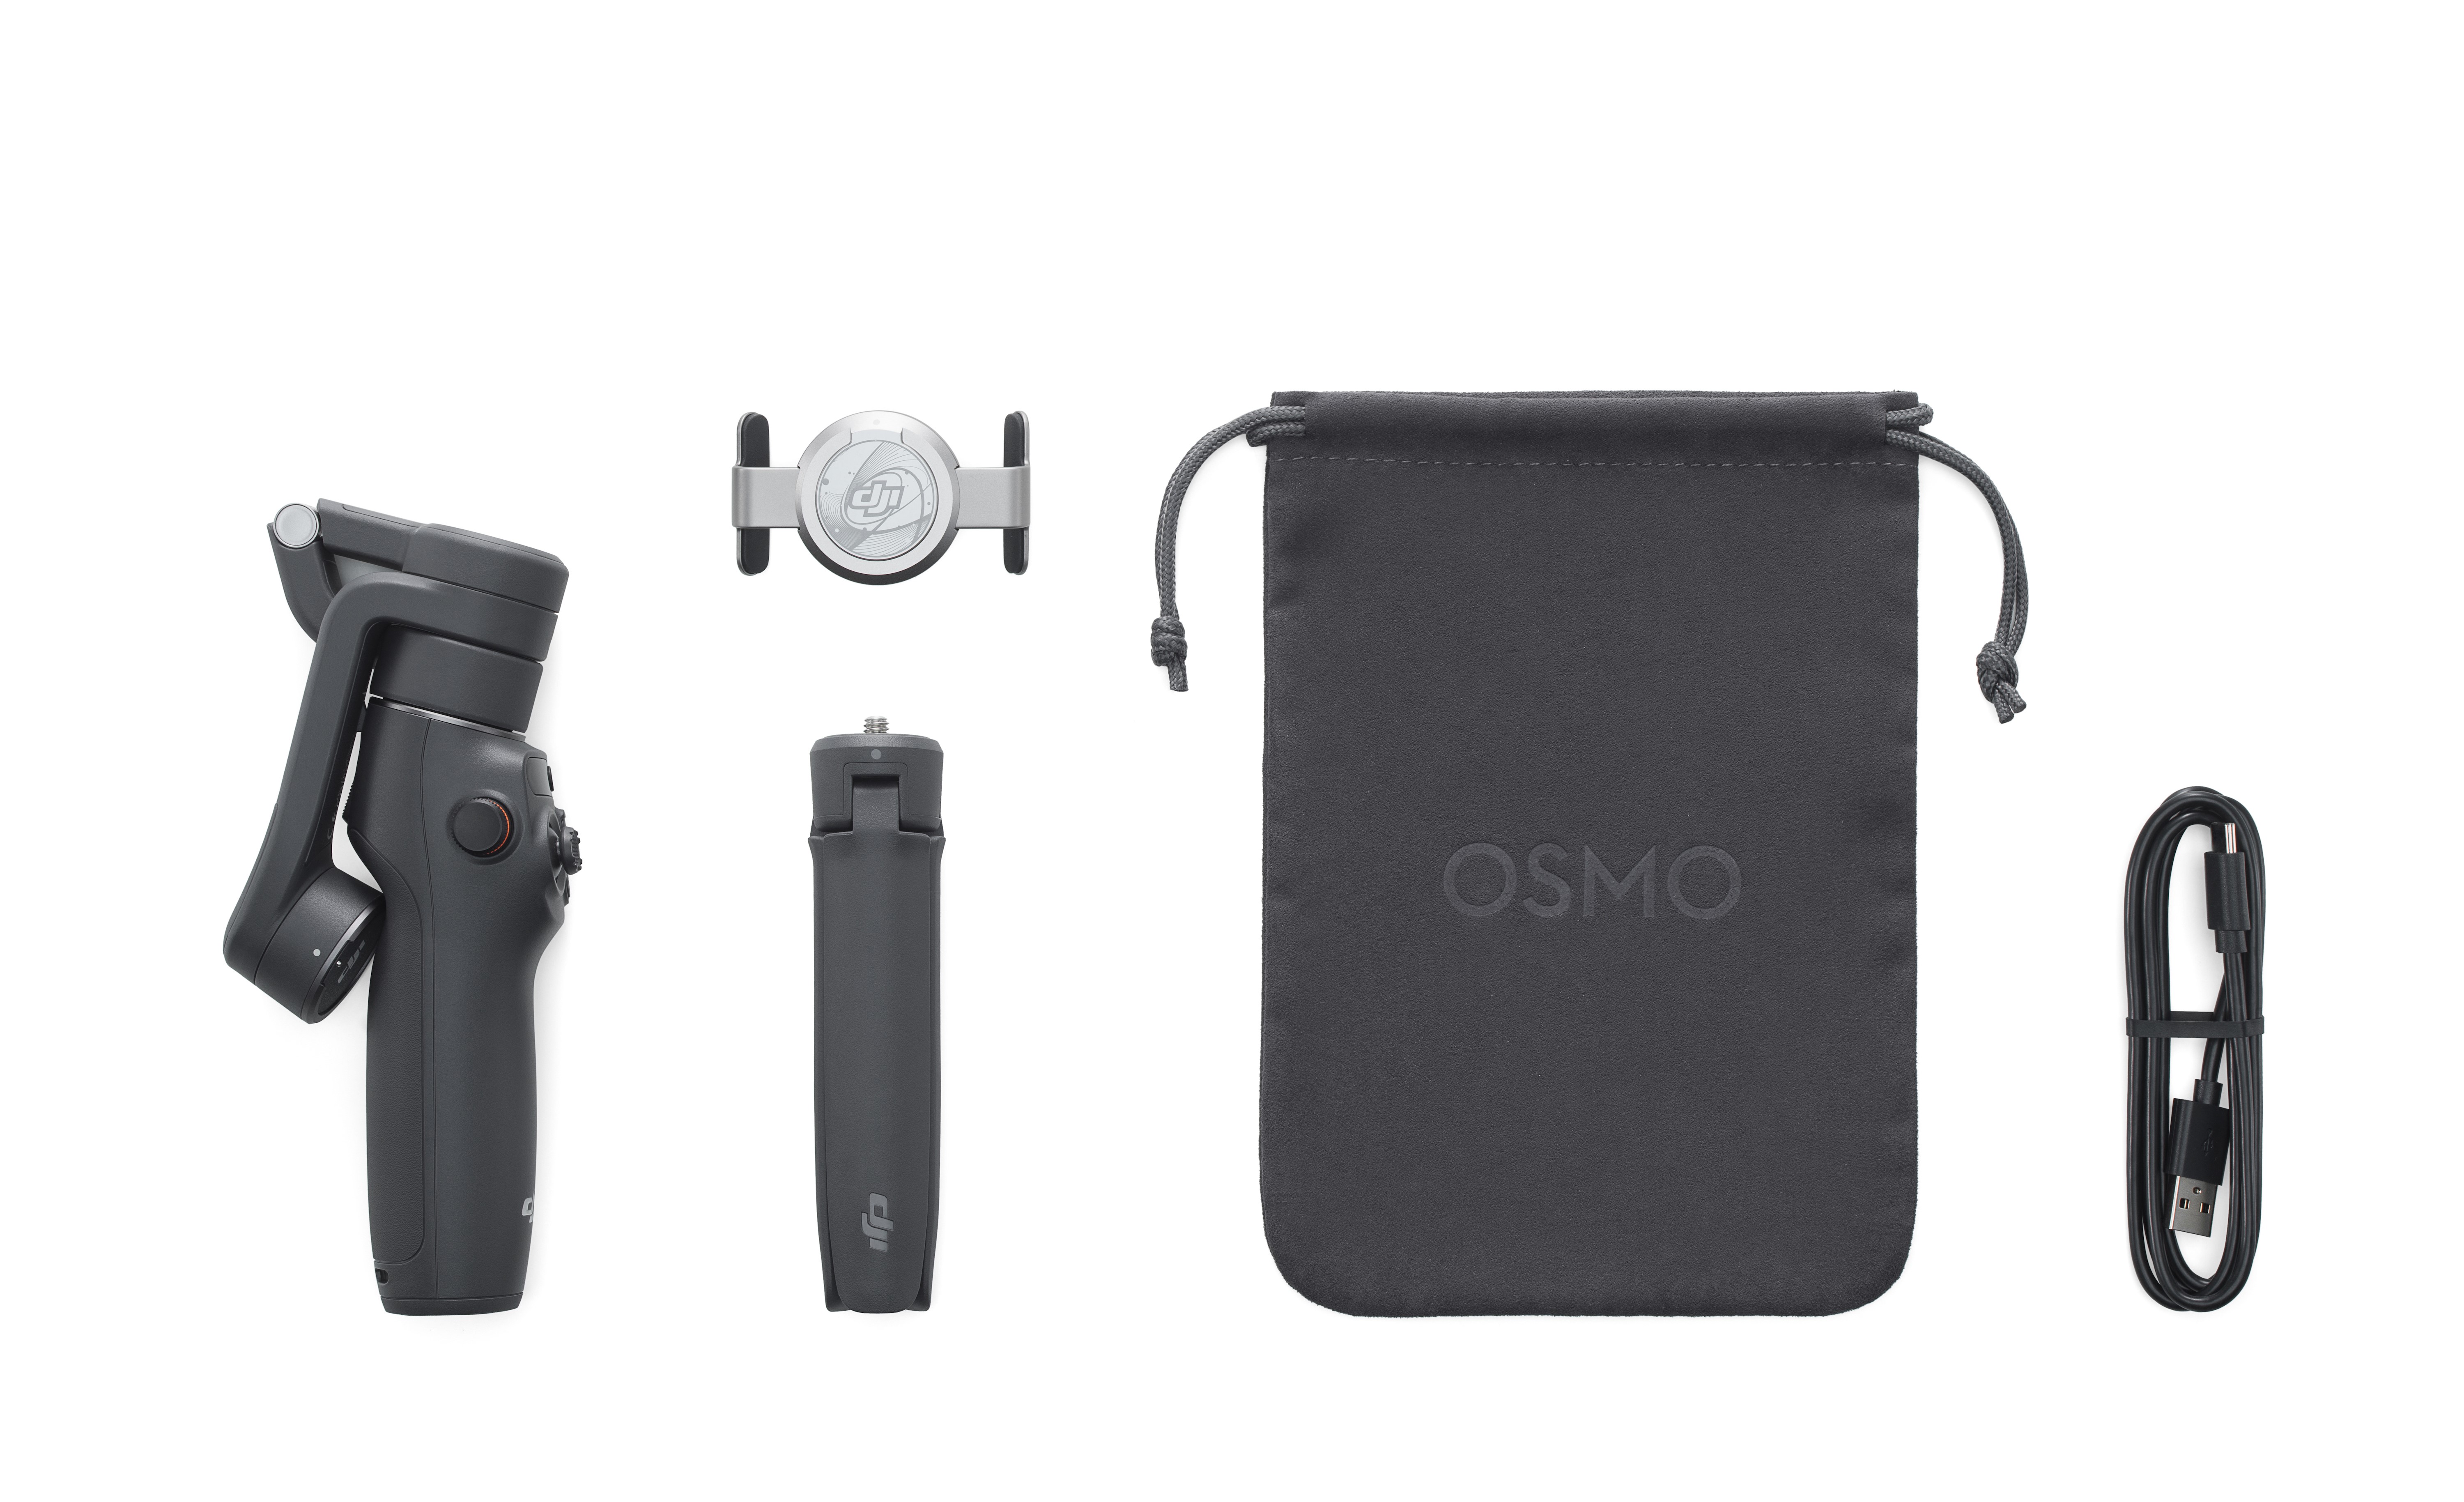 大疆发布新一代手机云台Osmo Mobile 6-活动-大疆社区